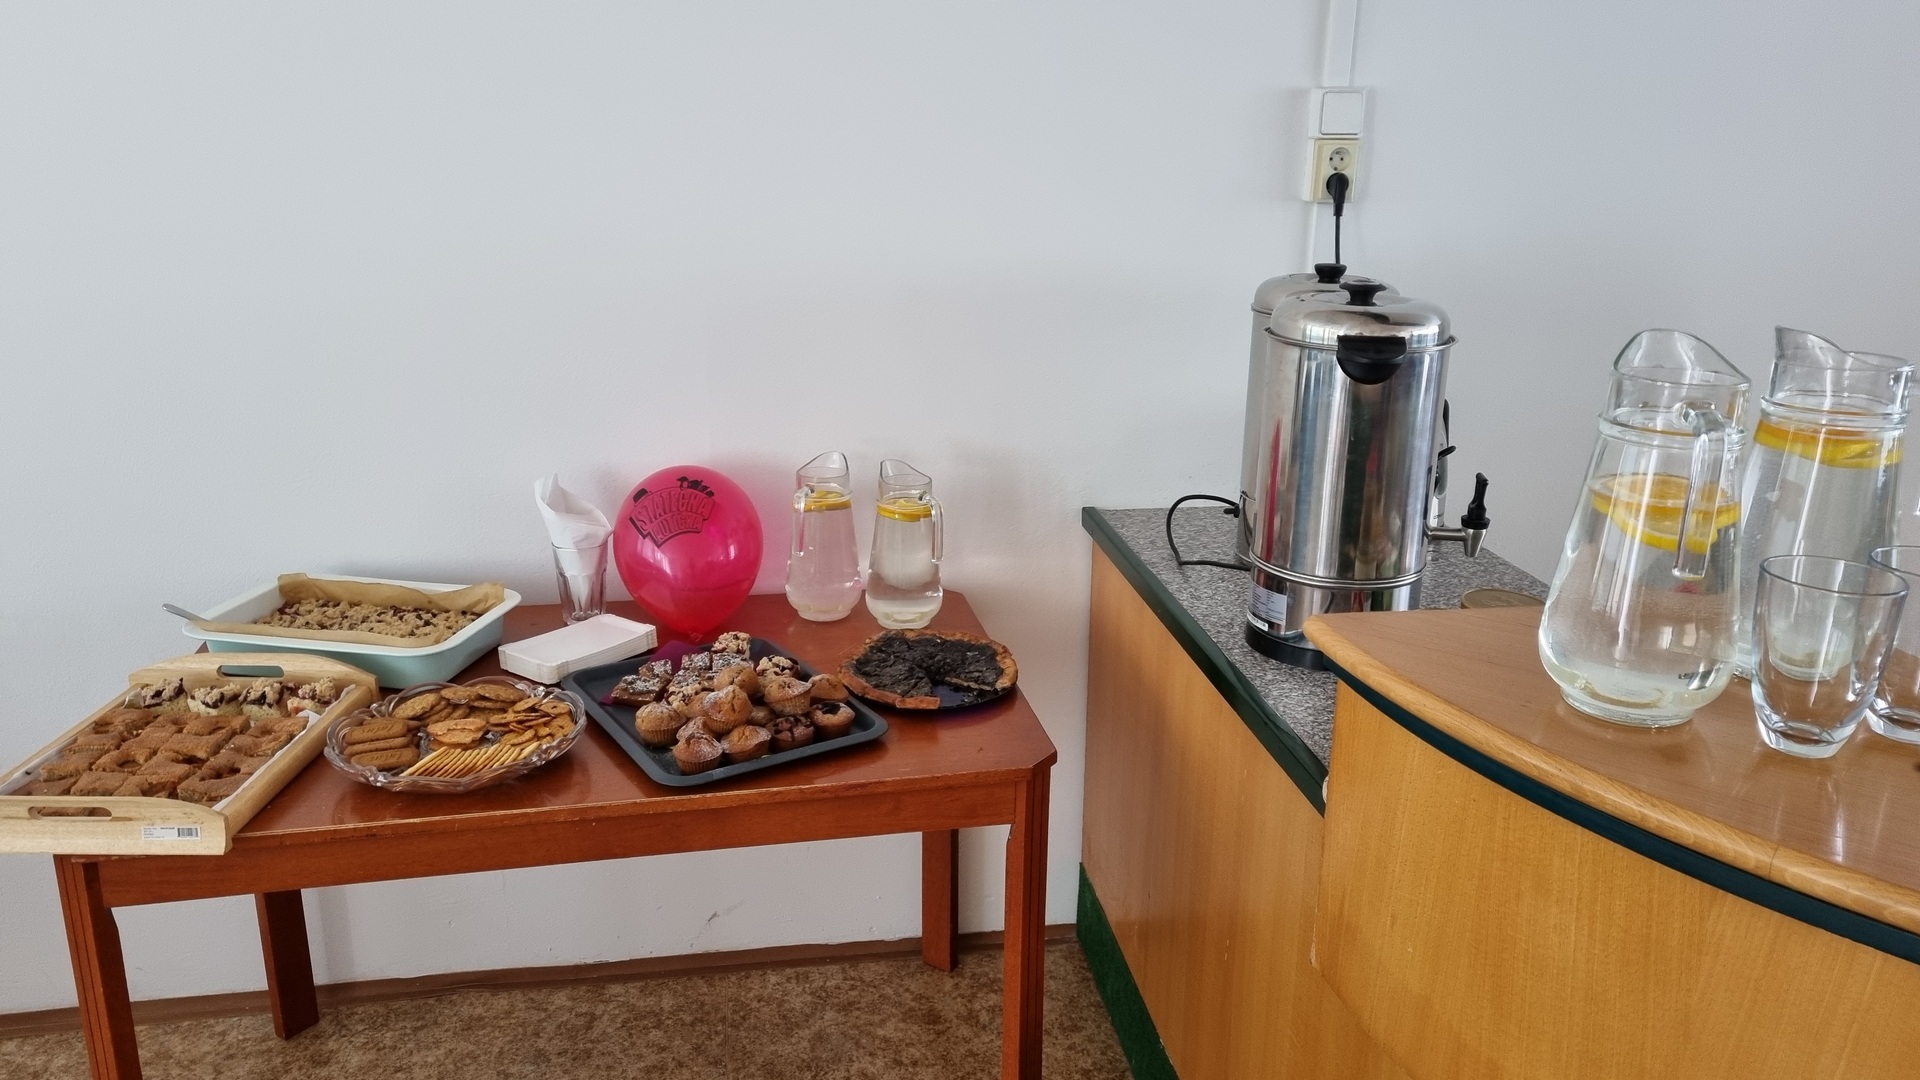 pohled na stoly s občerstvením - tácy s buchtami, džbánky s vodou a citronem a várnice s horkou vodou pro přípravu kávy a čaje